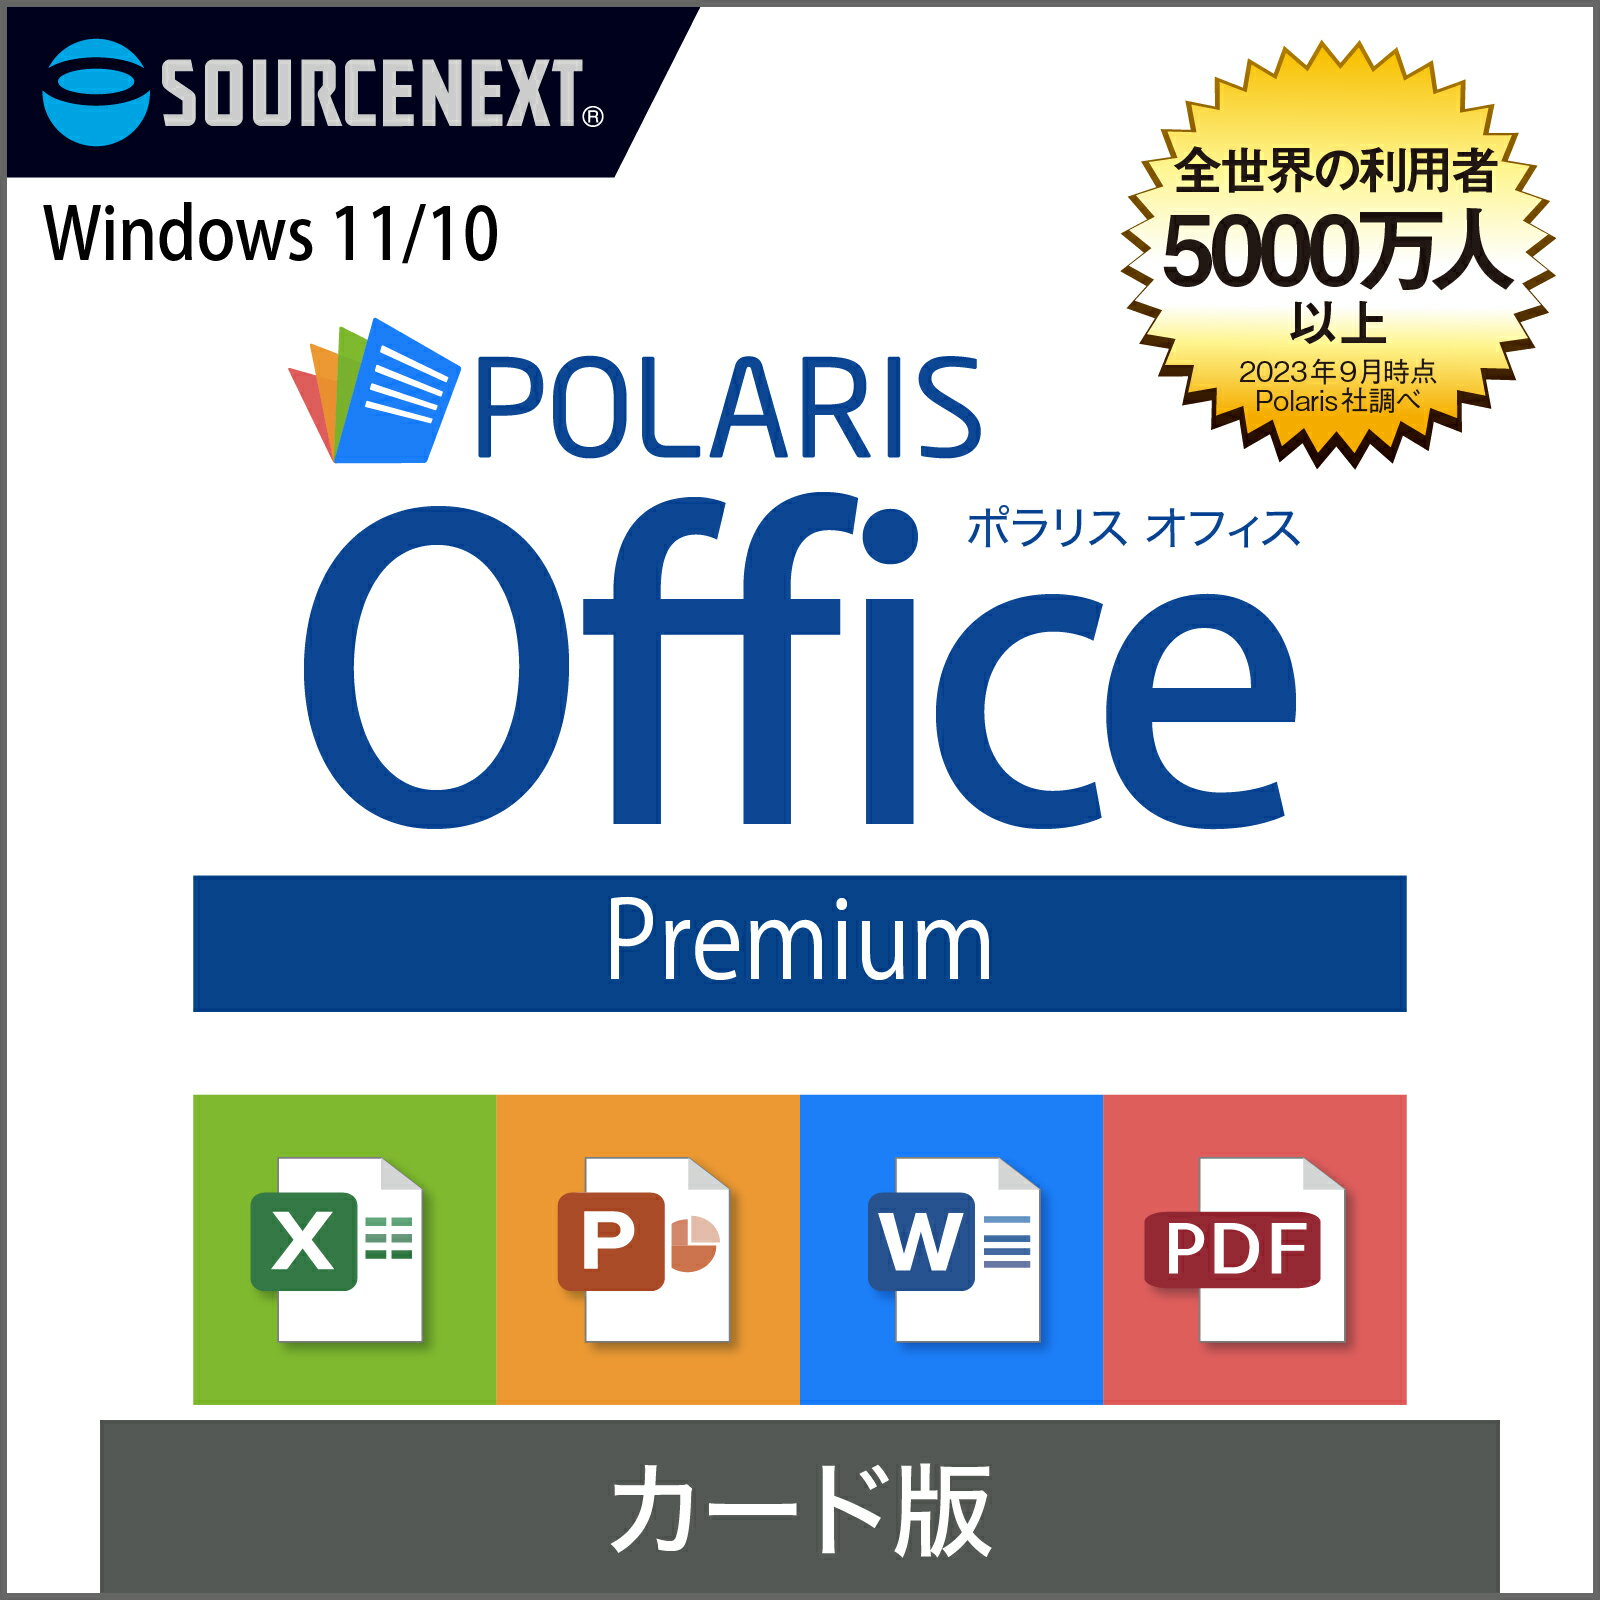 Polaris Office Premium [Windowsp][ItBX\tg] |X Microsoft Office ItBX ݊ Excel PowerPoint Word p[|Cg GNZ\tg [h